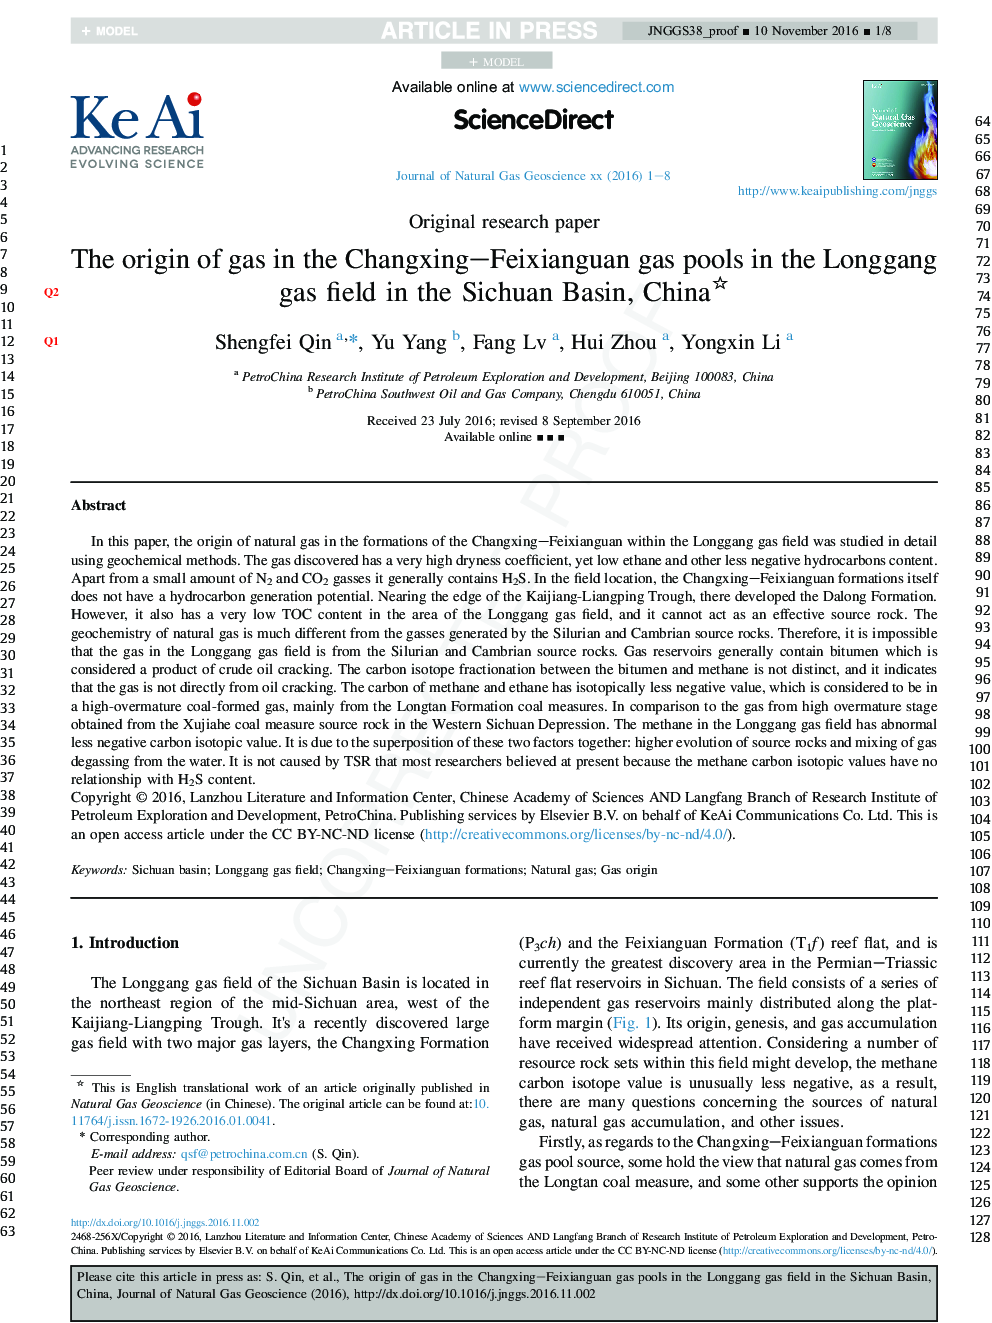 The origin of gas in the Changxing-Feixianguan gas pools in the Longgang gas field in the Sichuan Basin, China